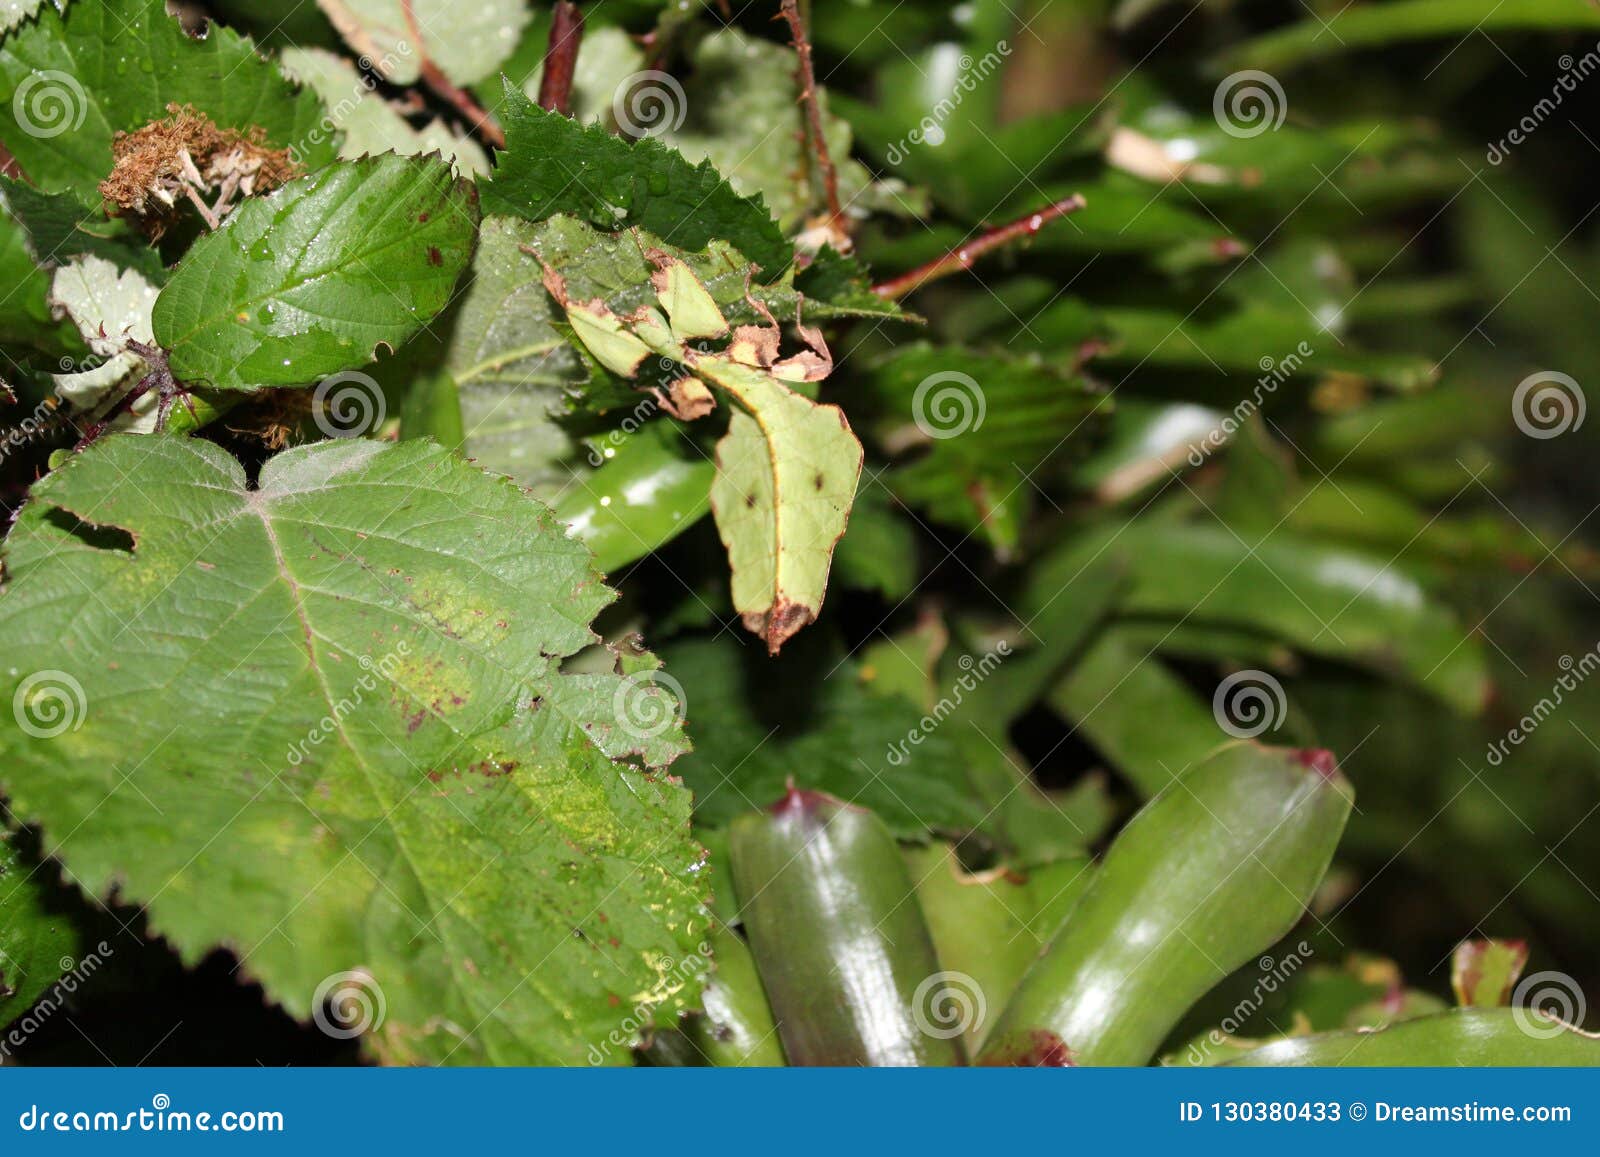 giant leaf insect phyllium giganteum